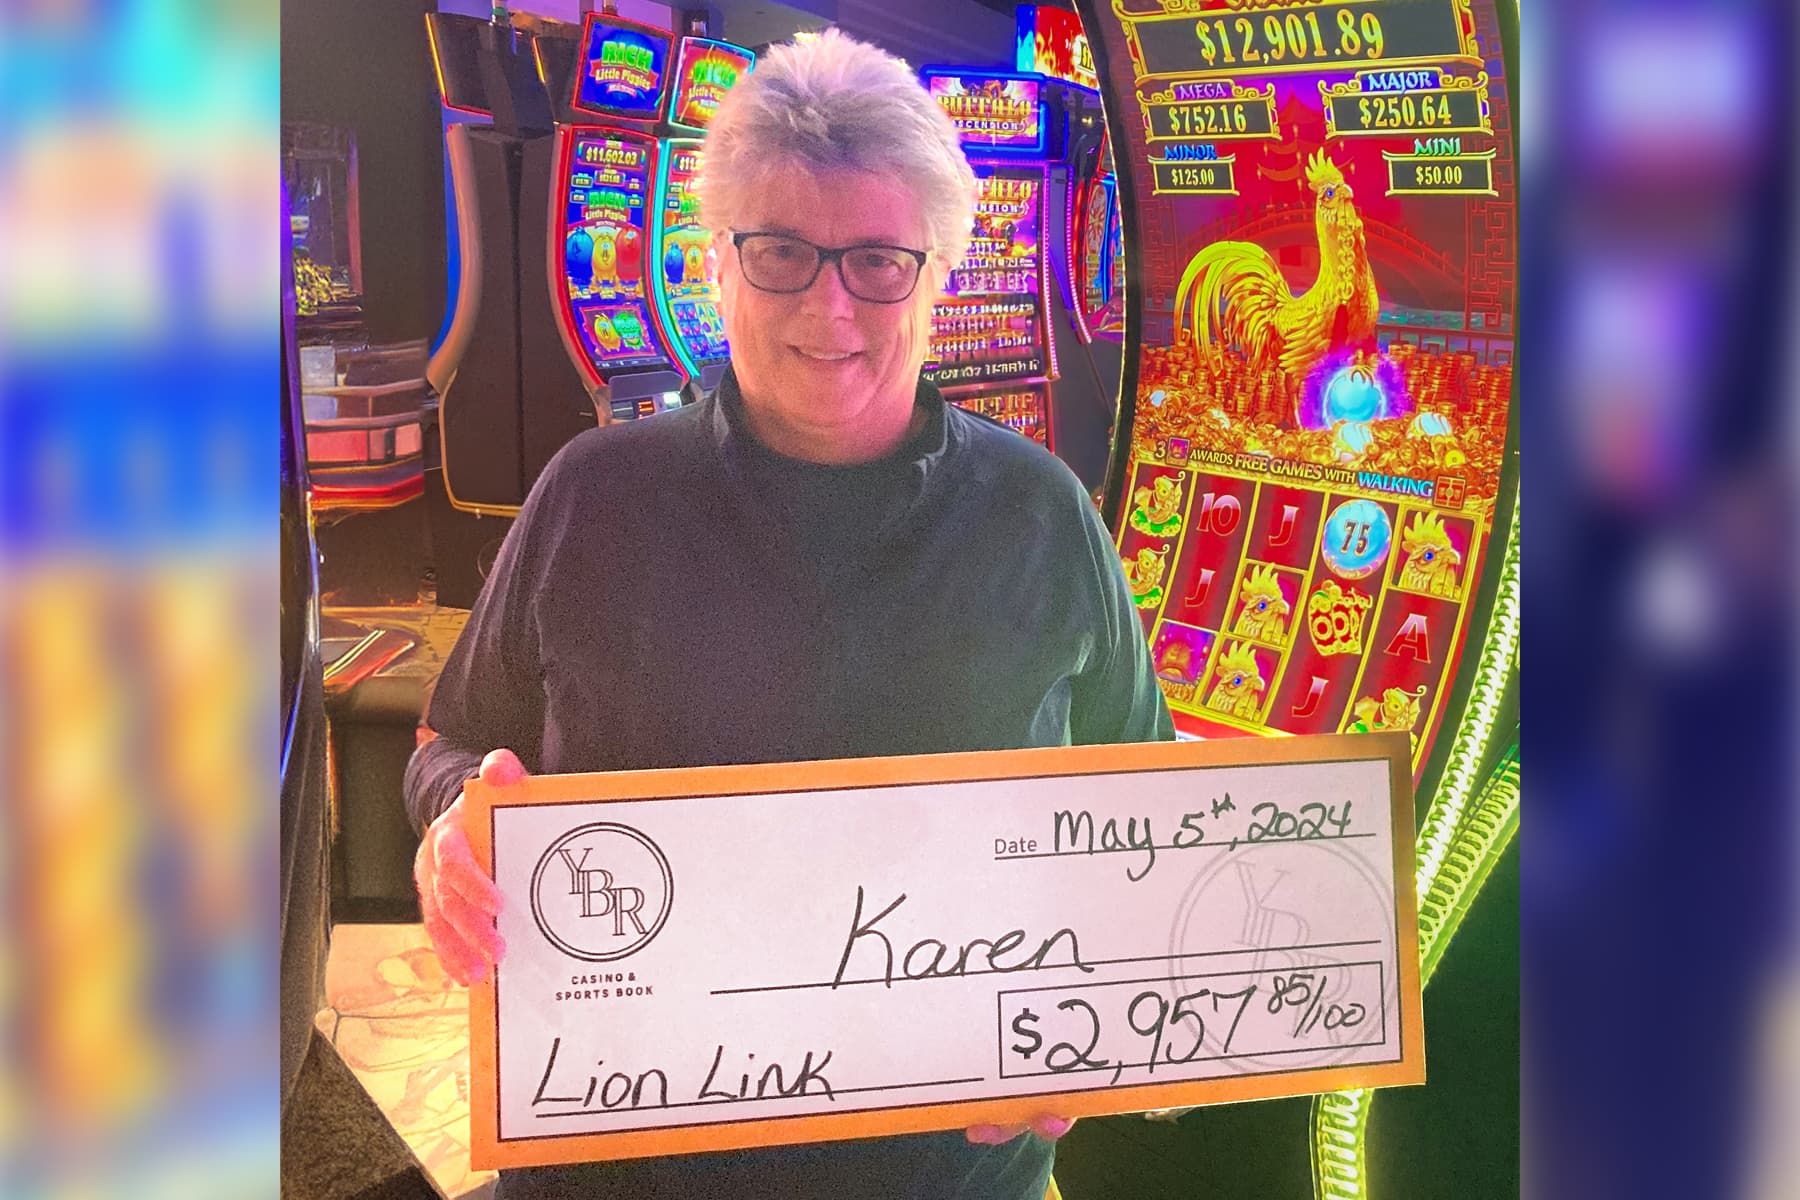 Karen won $2,957